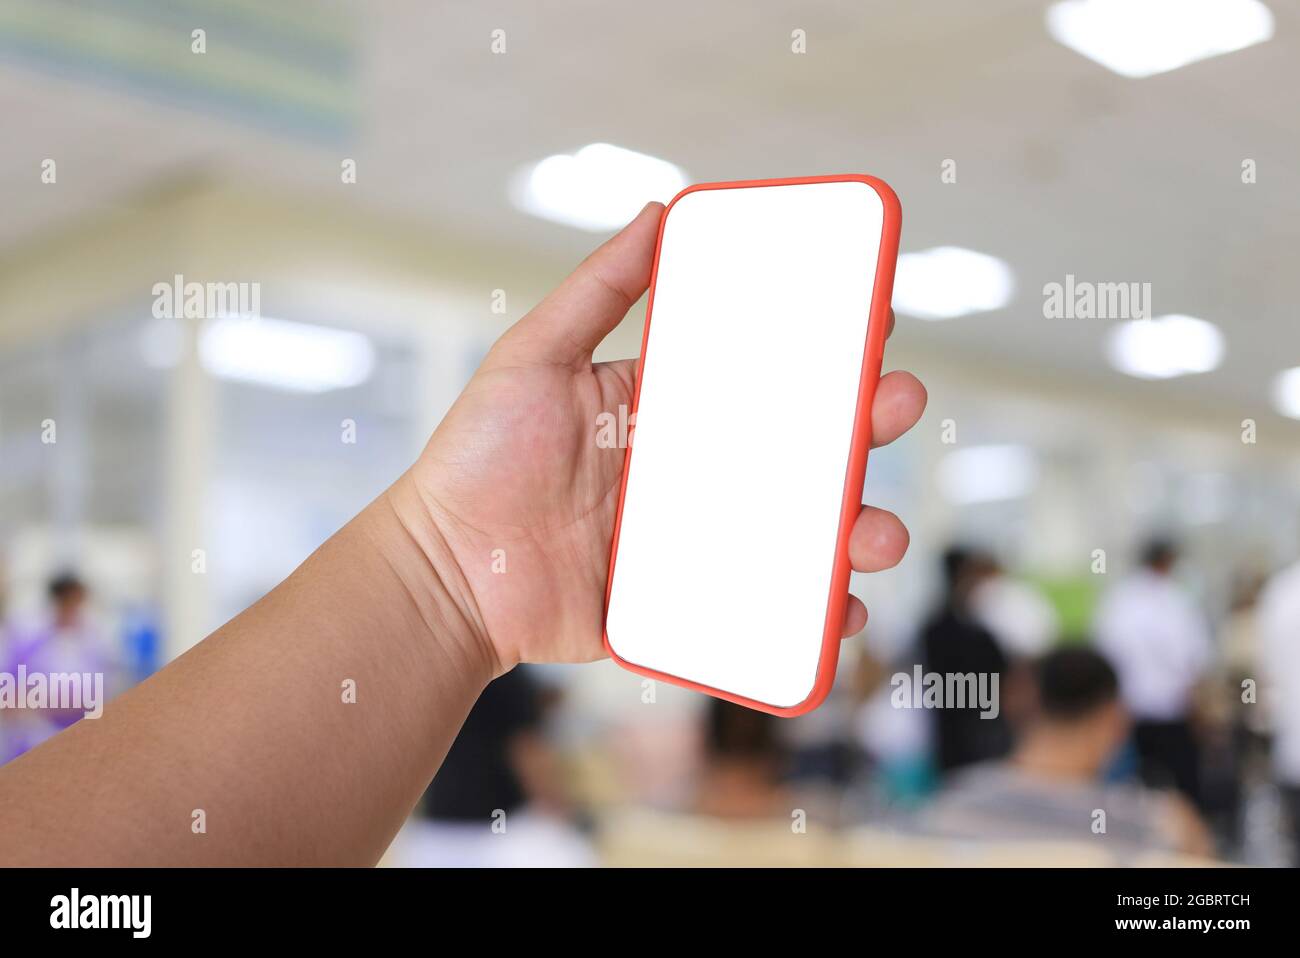 Handy in der Hand mit leerem Bildschirm auf Krankenhaushintergrund und haben Schnittpfade für Ihr Design. Stockfoto